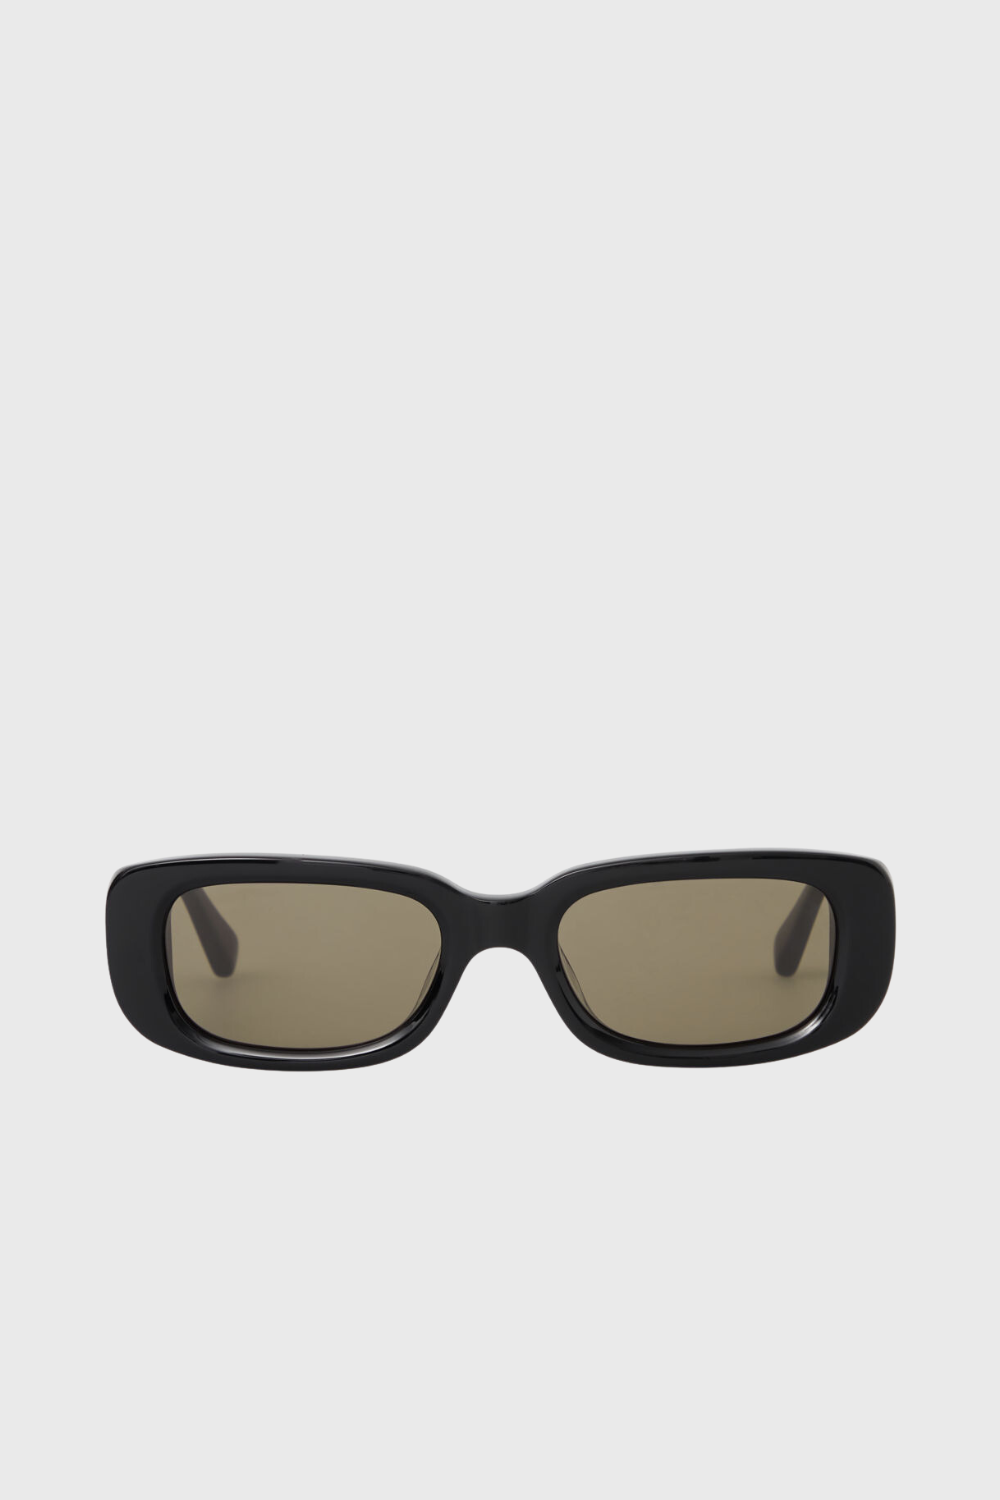 the rectangle acetate sunglasses